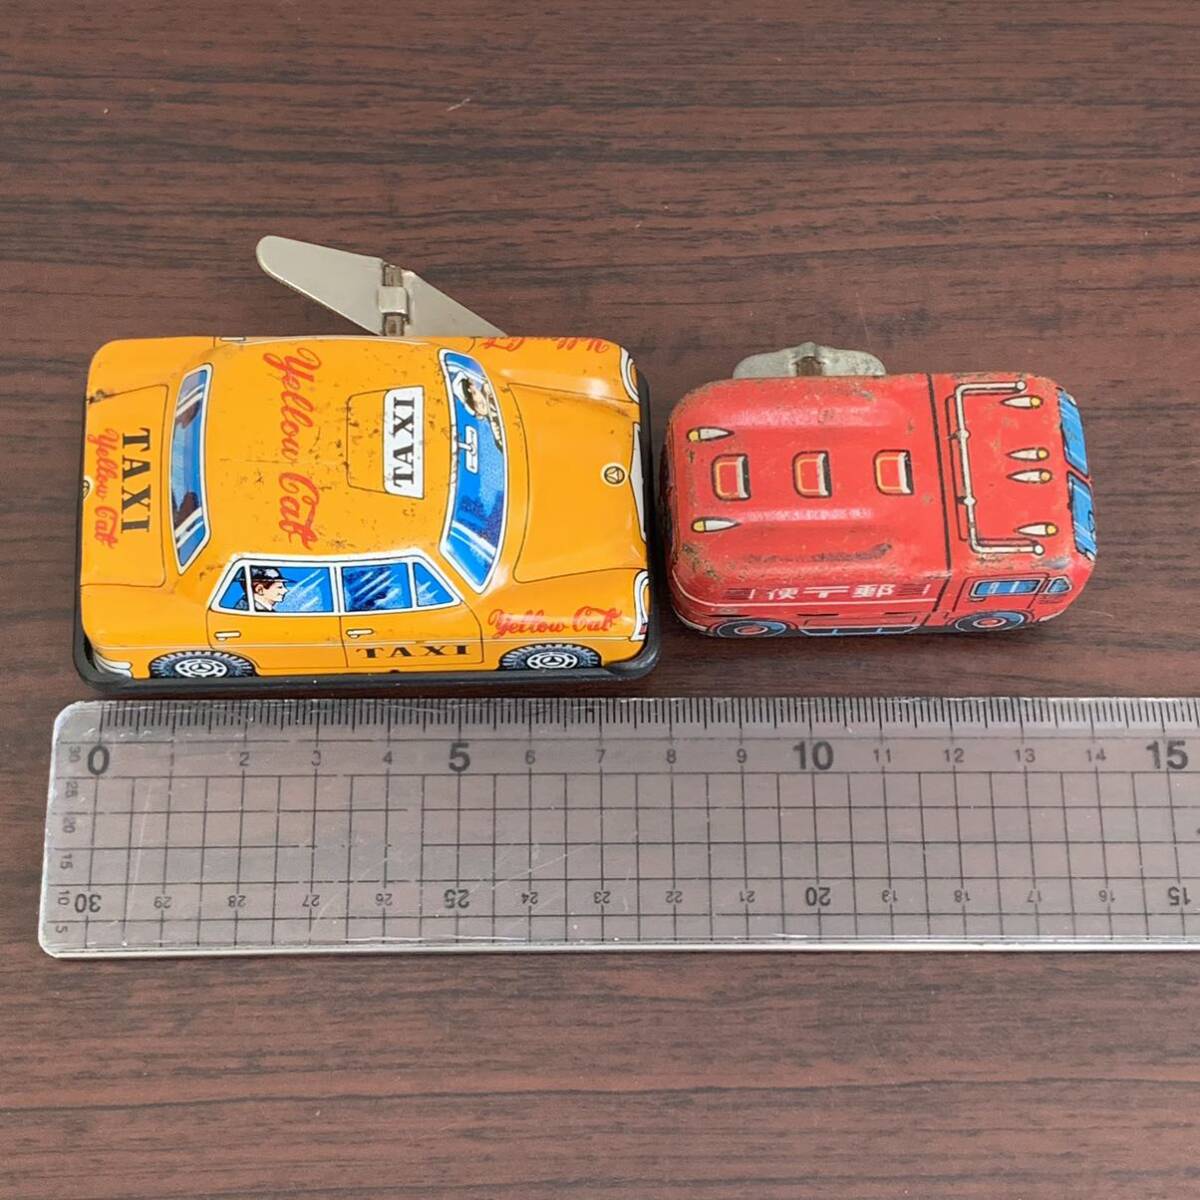 【TS0421 201-7】... миникар (Minicar)  разные  ...  почта  автомобиль  ... передвижной  ...  жёлтый ...  в настоящее время  вещь   антиквариат   коллекция 